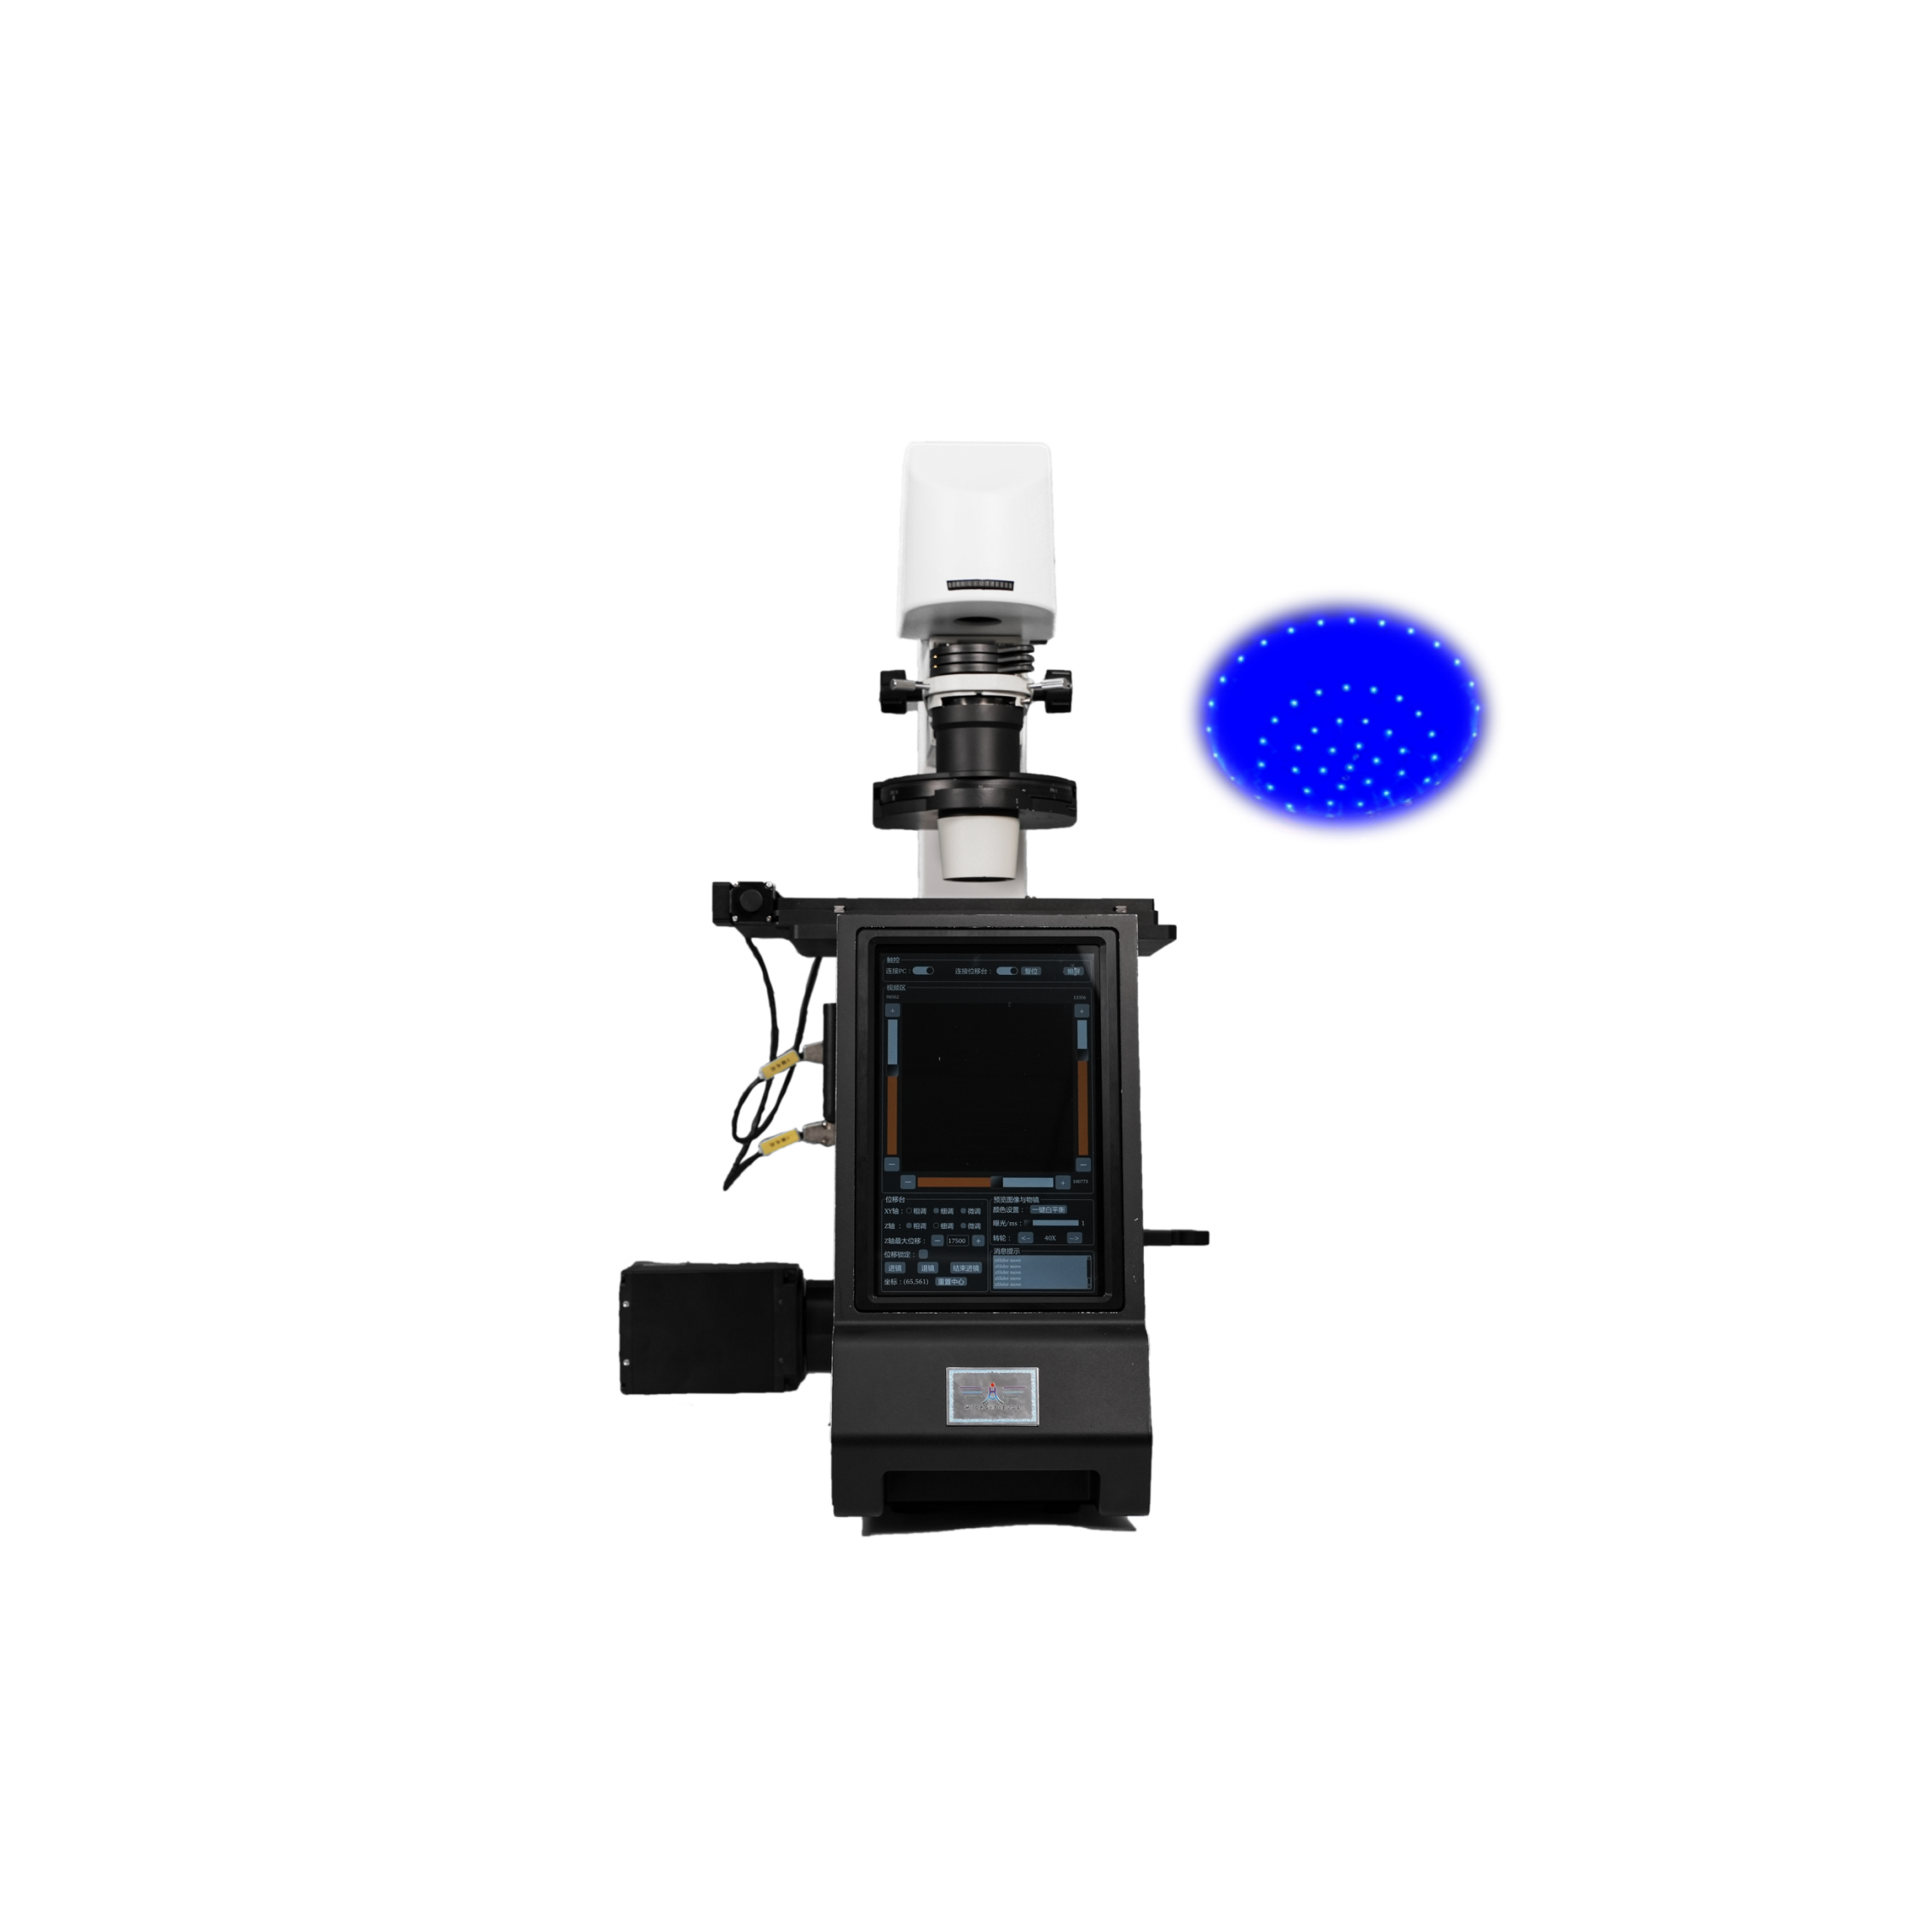 国产傅里叶叠层显微成像显微镜（FPM）不受荧光标记限制